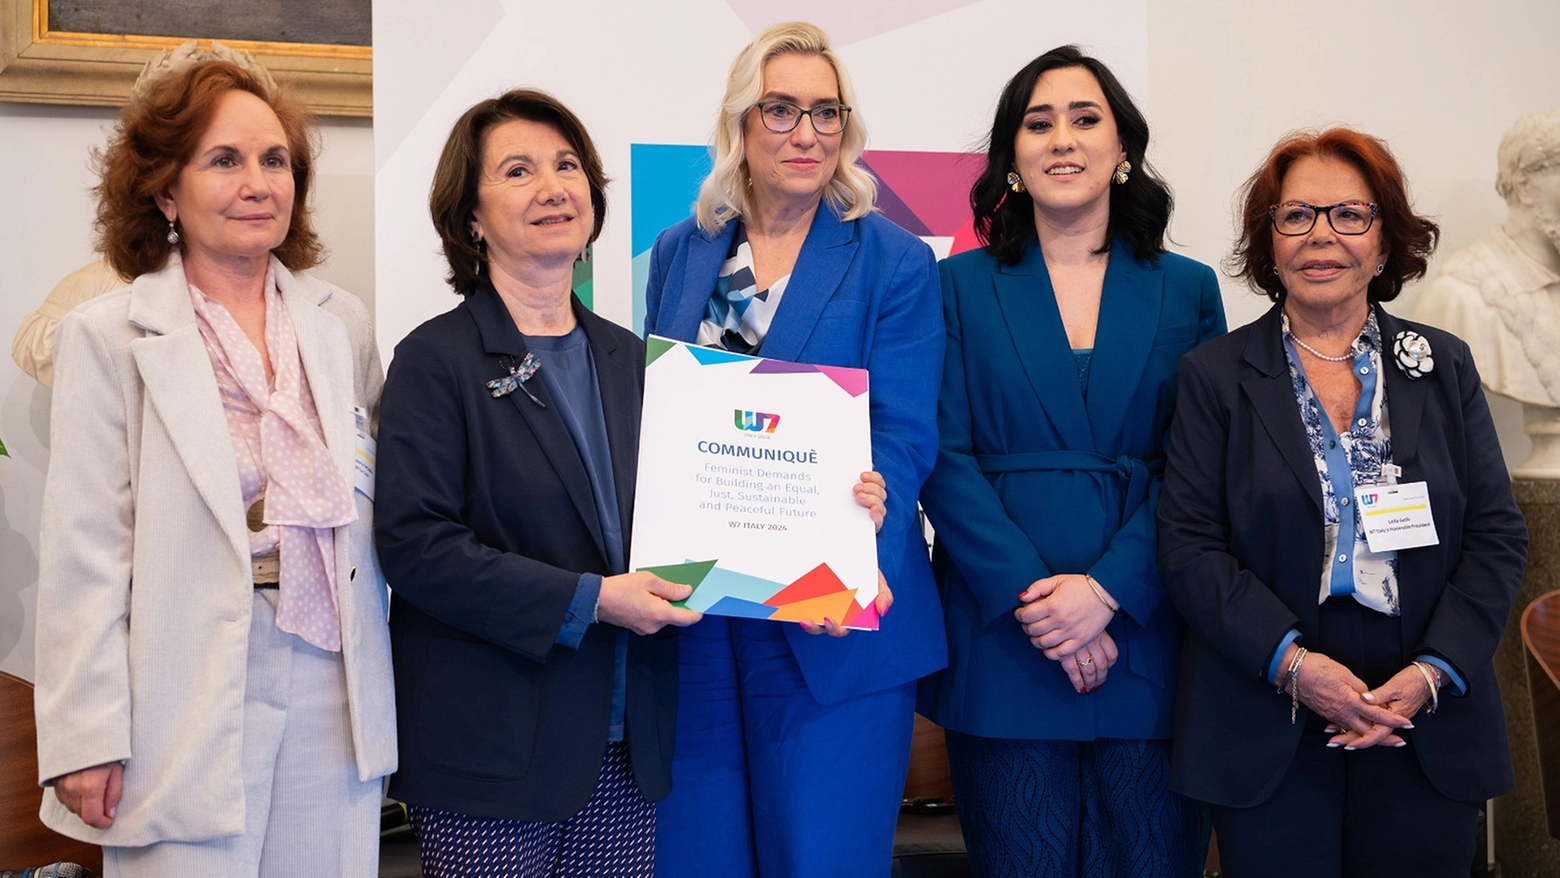 Il vertice a Roma con l’obiettivo di sensibilizzare i governi sulle tematiche legate all'inclusione delle donne in tutti gli aspetti della società